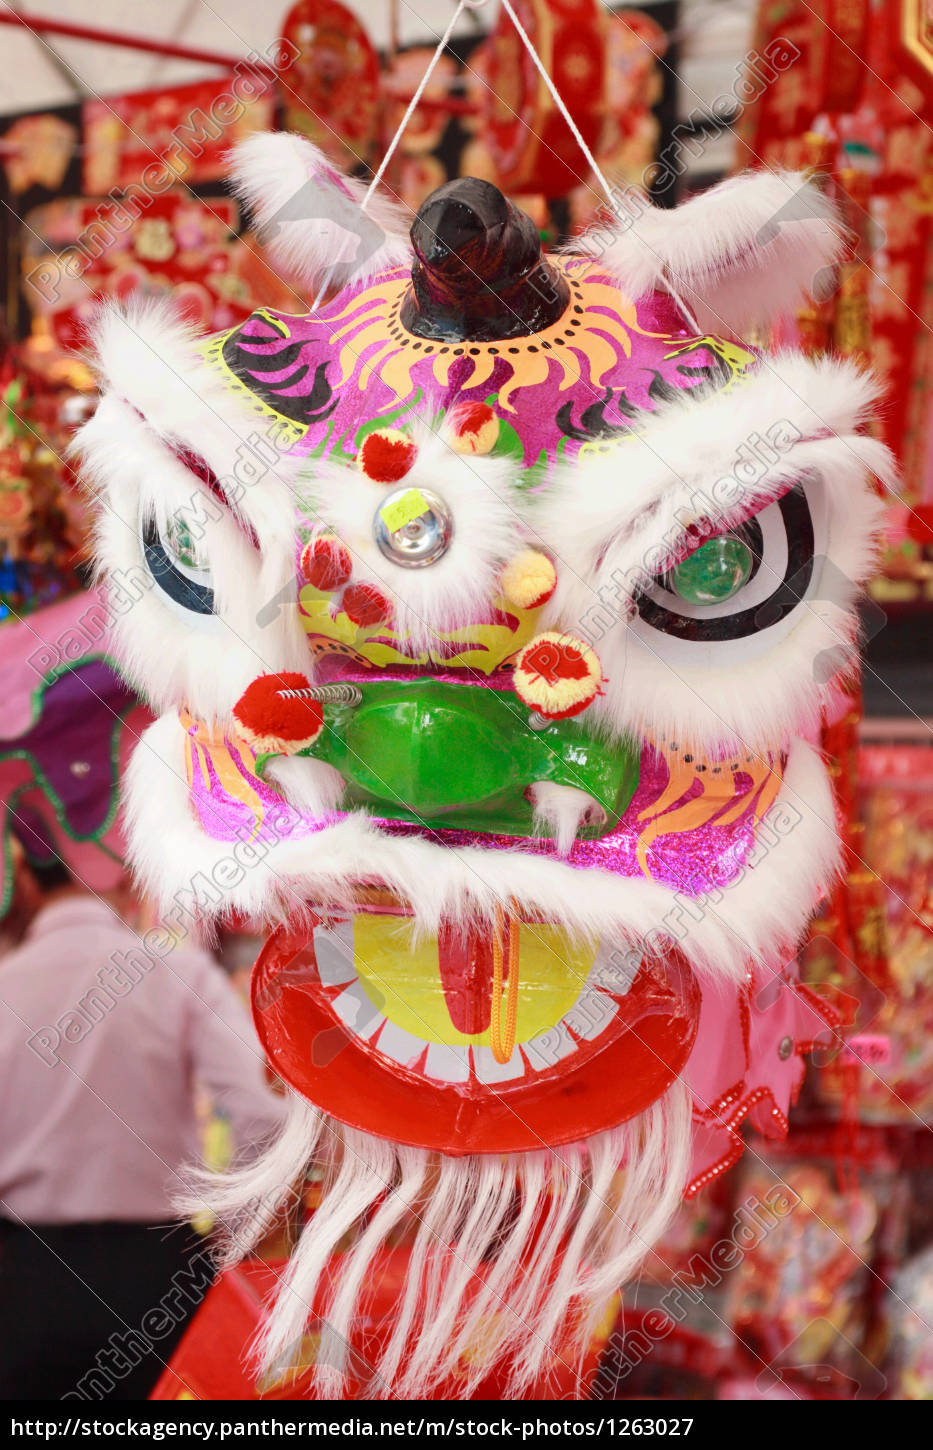 ild Konklusion tak skal du have kinesiske drage maske på salg - Stockphoto #1263027 | PantherMedia  Billedbureau